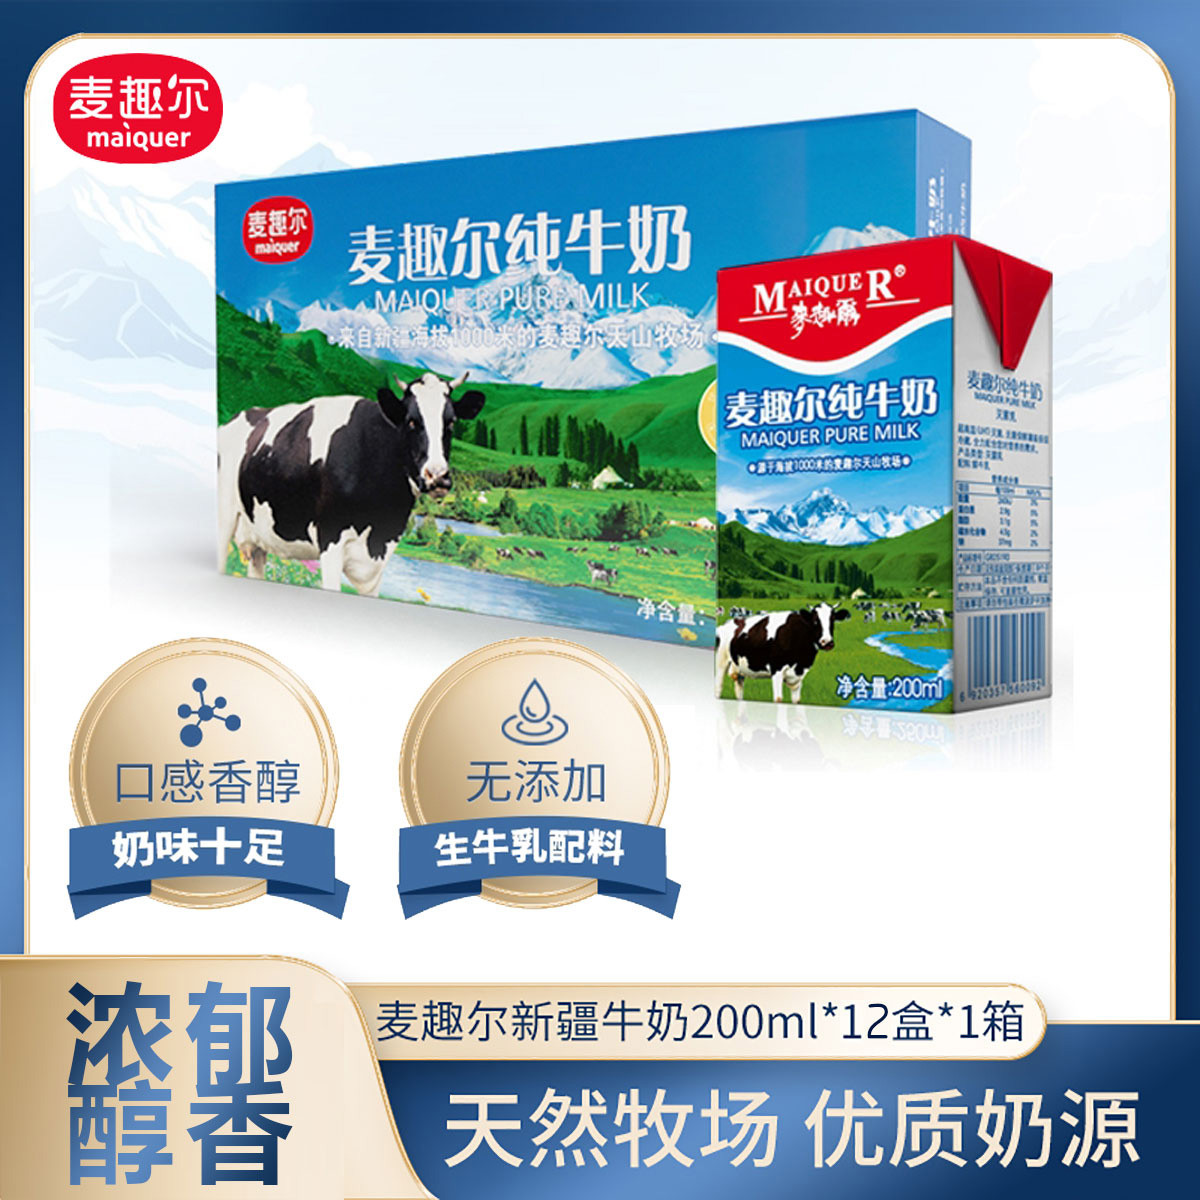 看世界）中国再爆食安问题 新疆麦趣尔纯牛奶被曝掺丙二醇